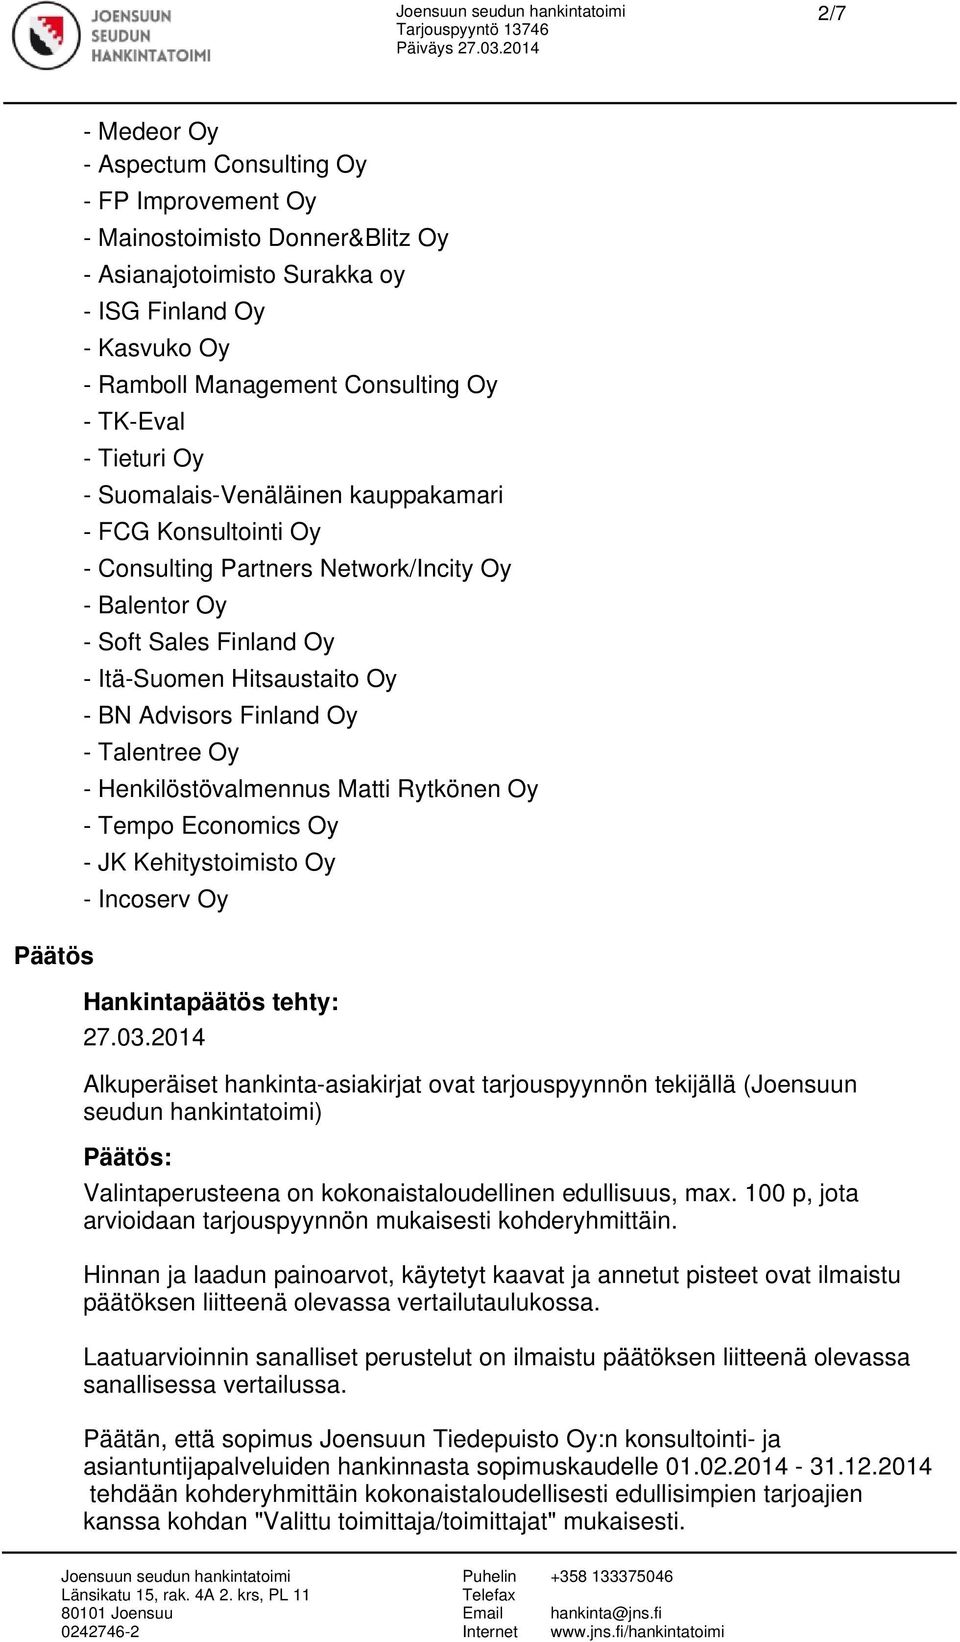 Finland Oy - Talentree Oy - Henkilöstövalmennus Matti Rytkönen Oy - Tempo Economics Oy - JK Kehitystoimisto Oy - Incoserv Oy Hankintapäätös tehty: 27.03.